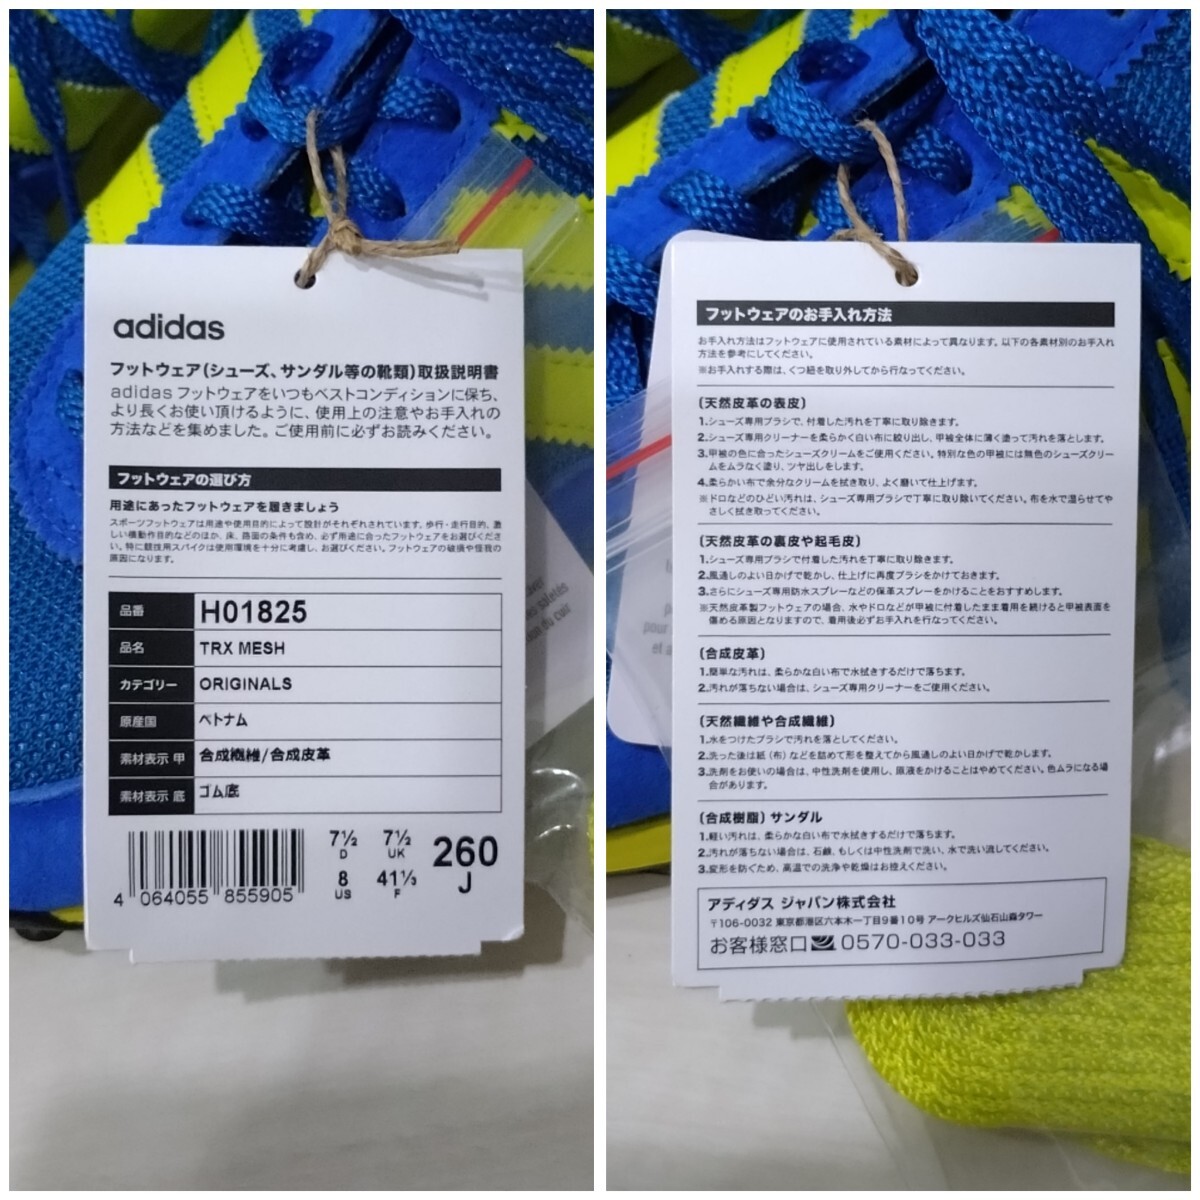 新品 adidas スニーカー TRX MESH 26.0 メンズ US.8 ランニングシューズ 靴 アディダス_画像7